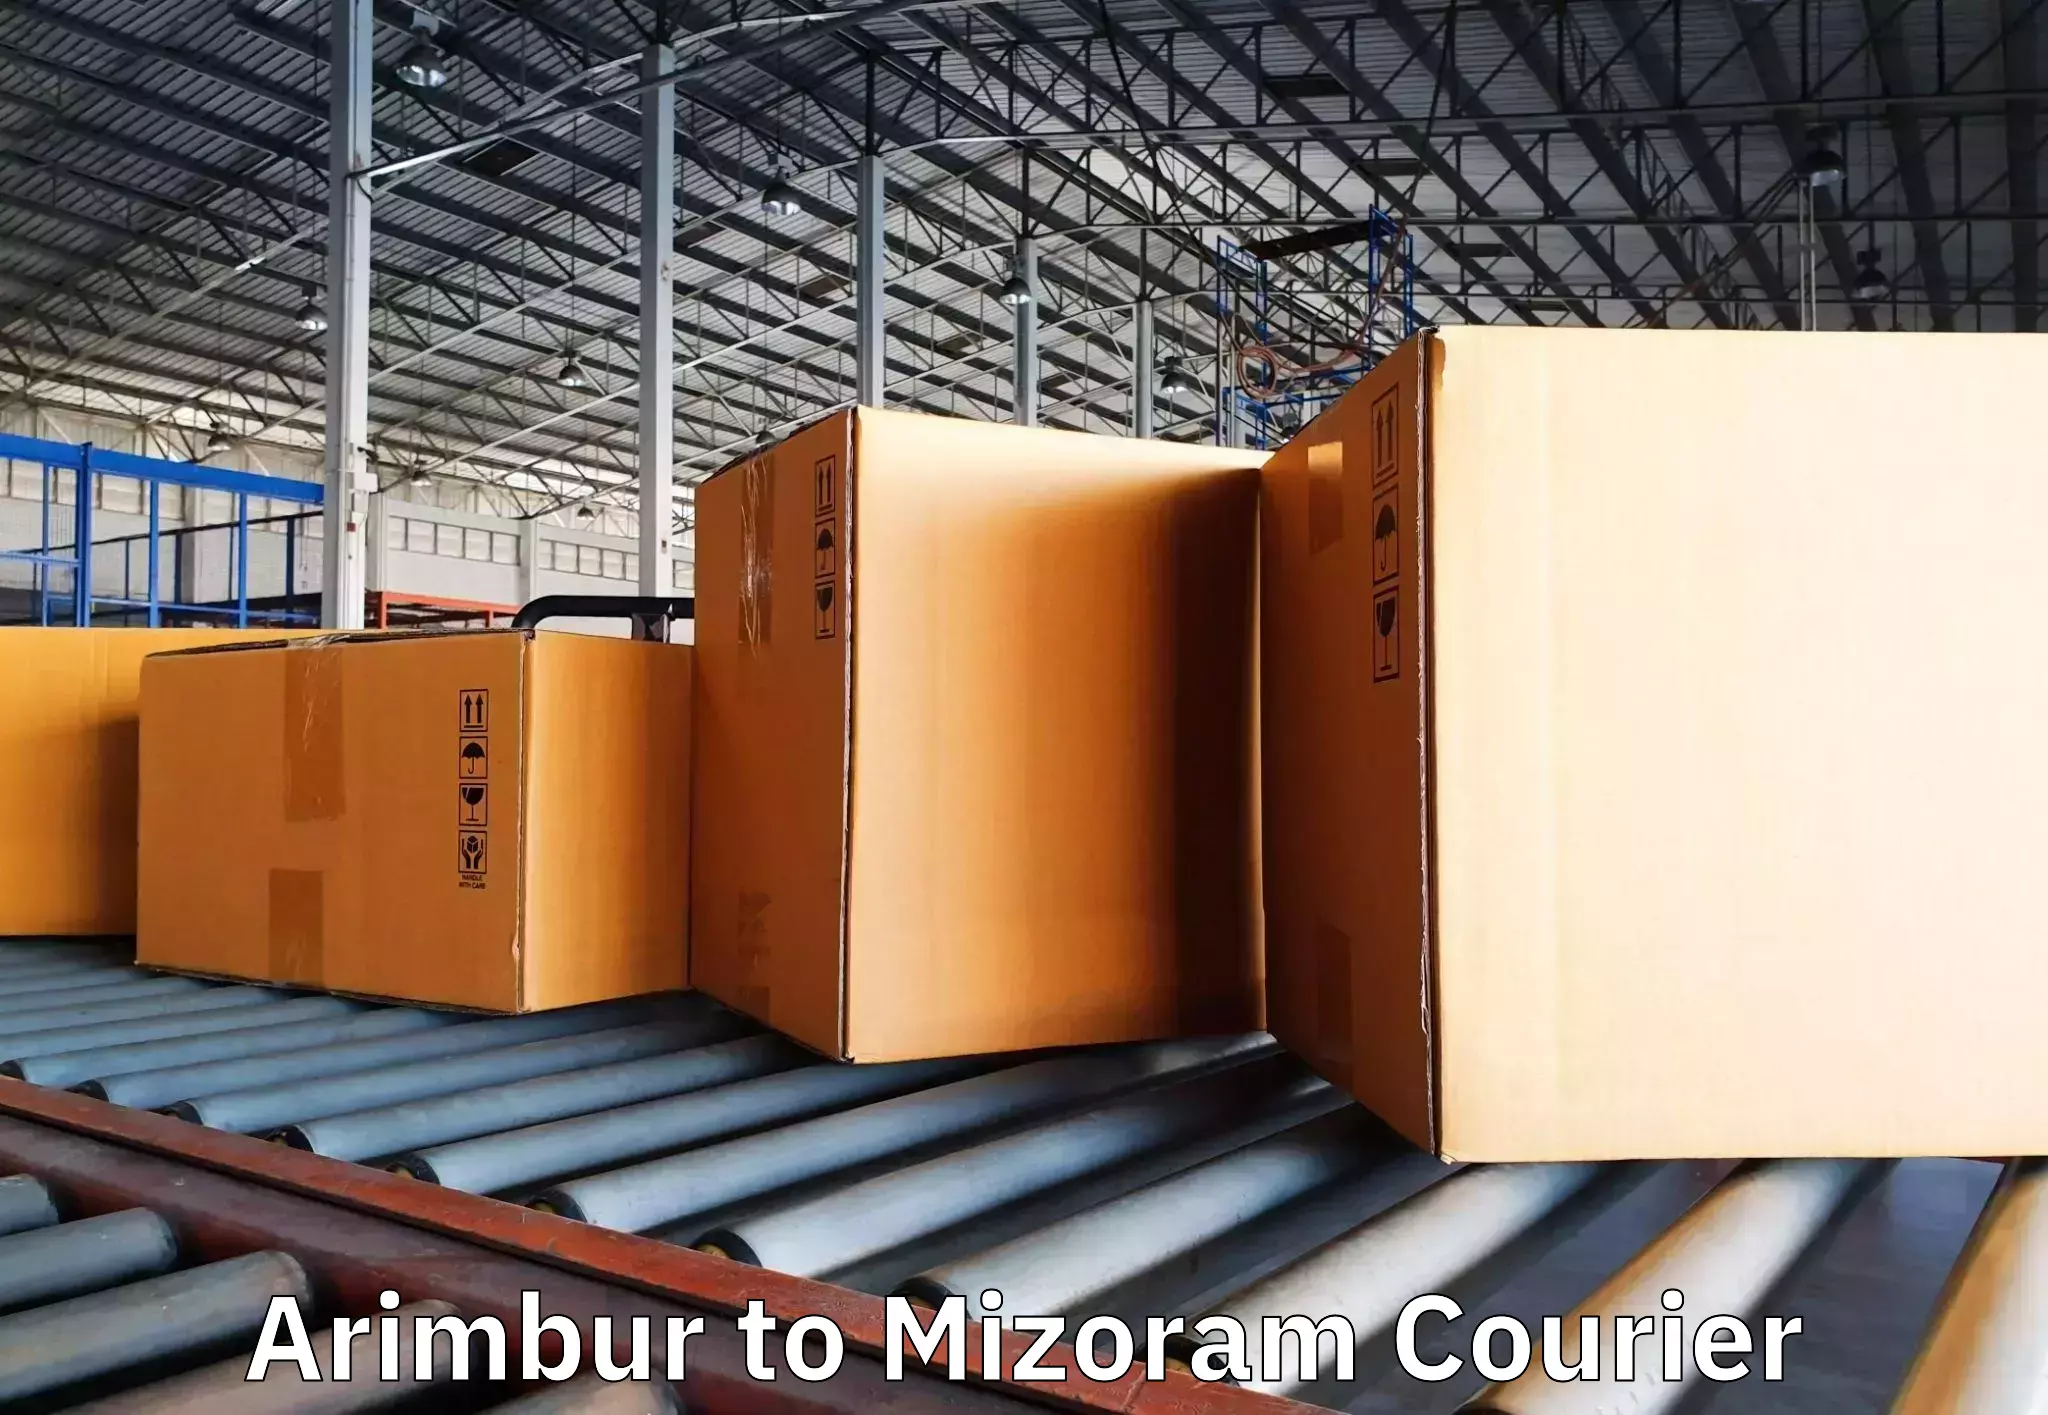 Professional furniture movers Arimbur to Mizoram